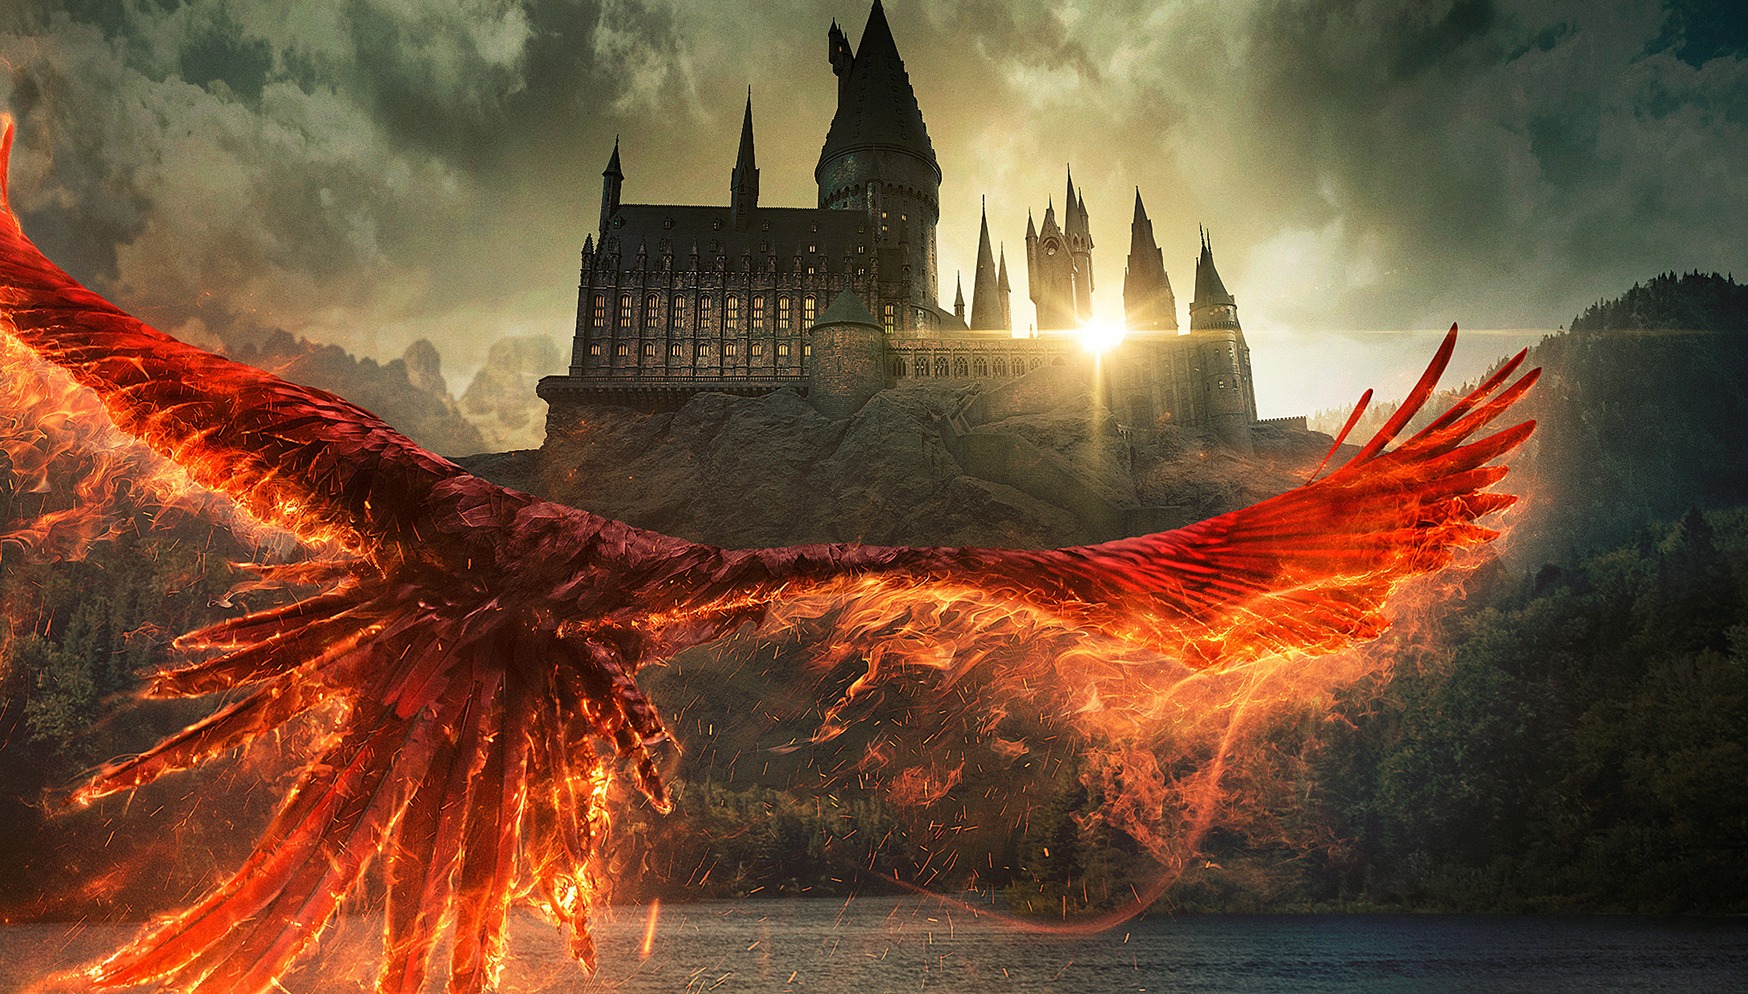 Hogwarts Legacy é adiado para 2023